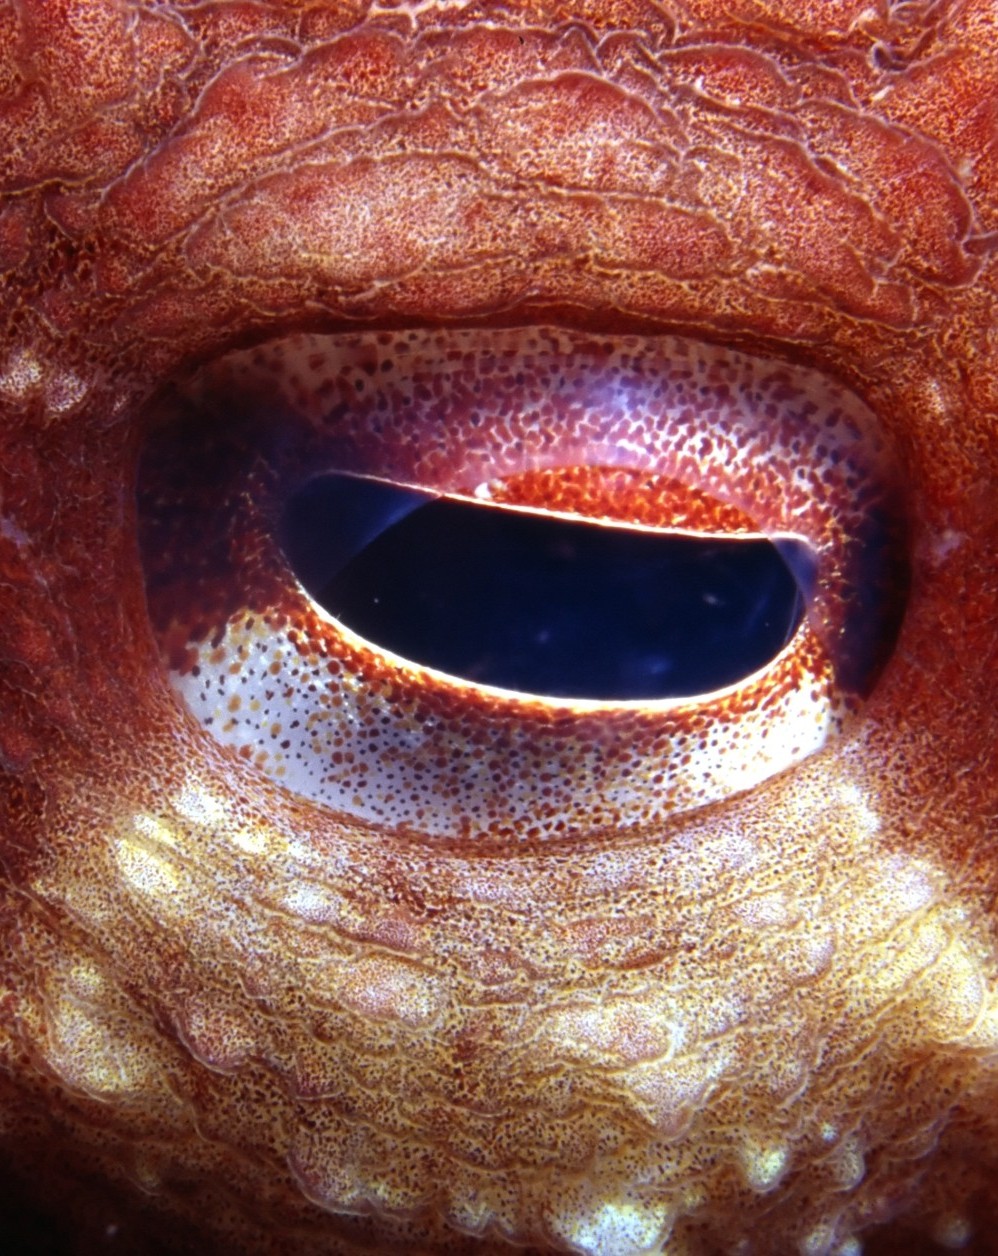 Closeup of an octopus eye